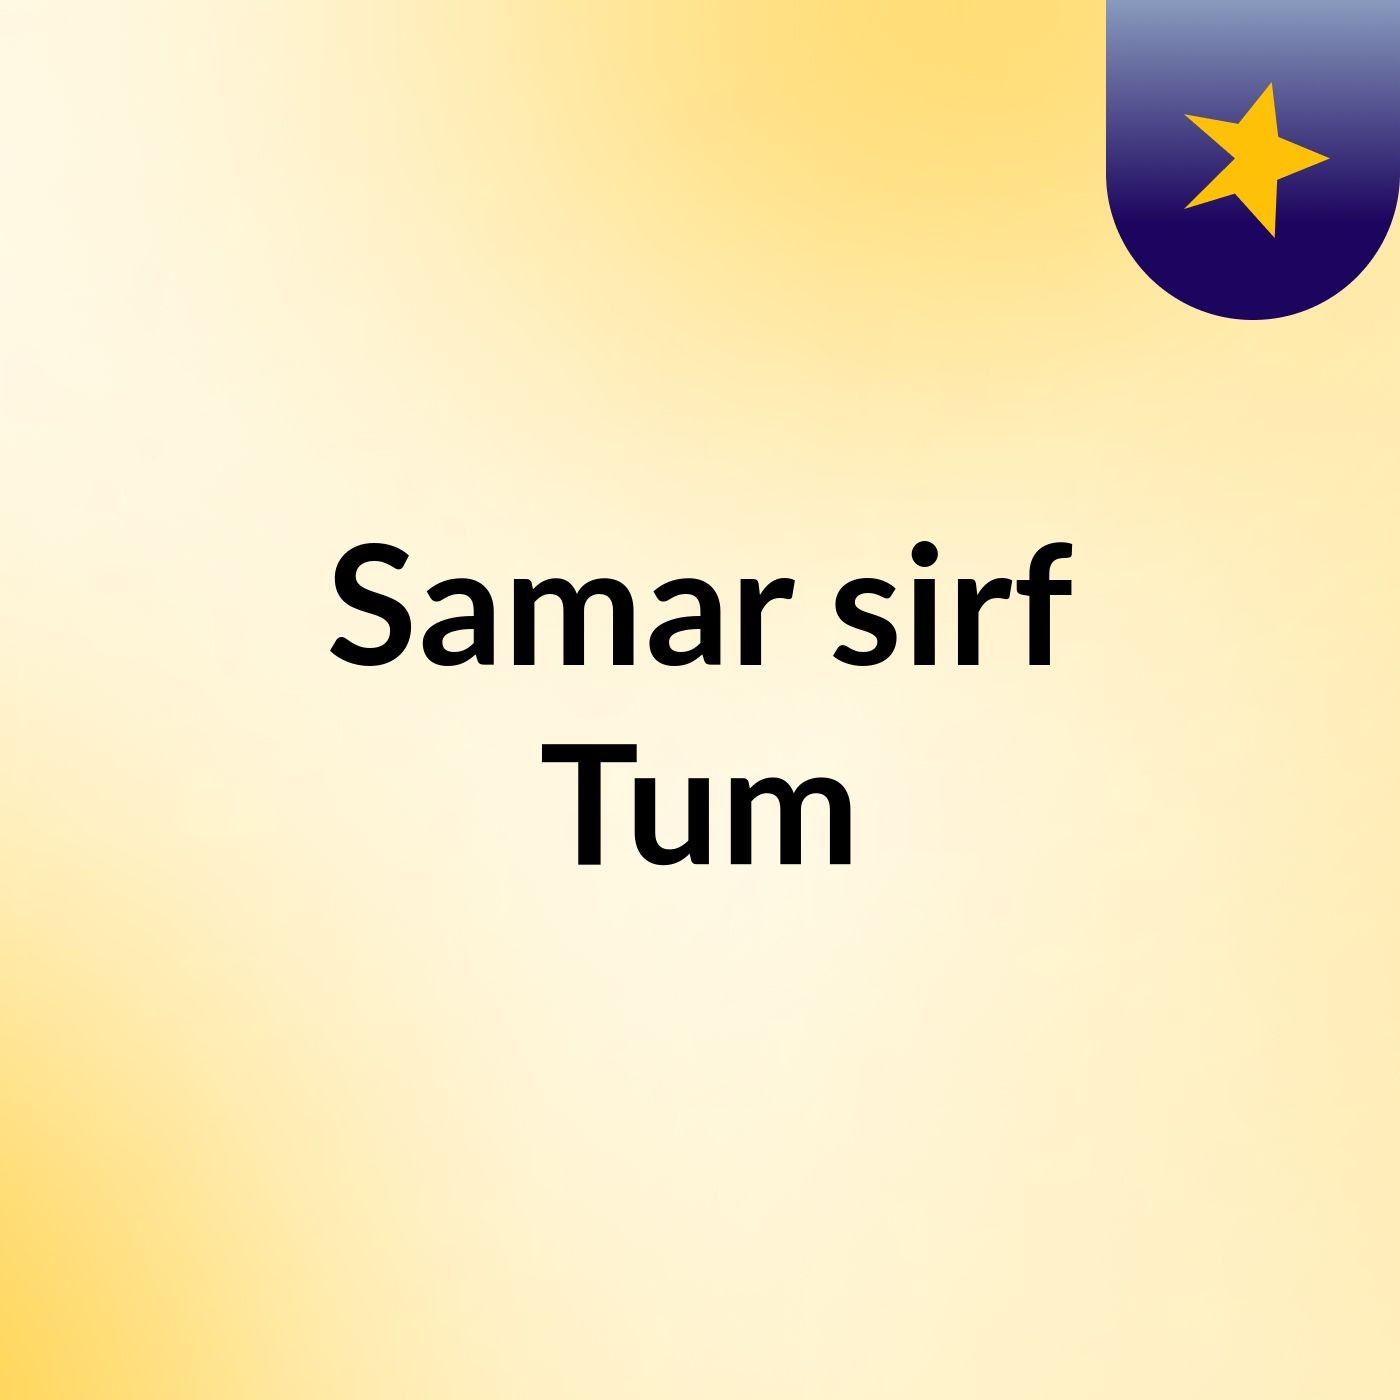 Episode 46 - Samar sirf Tum